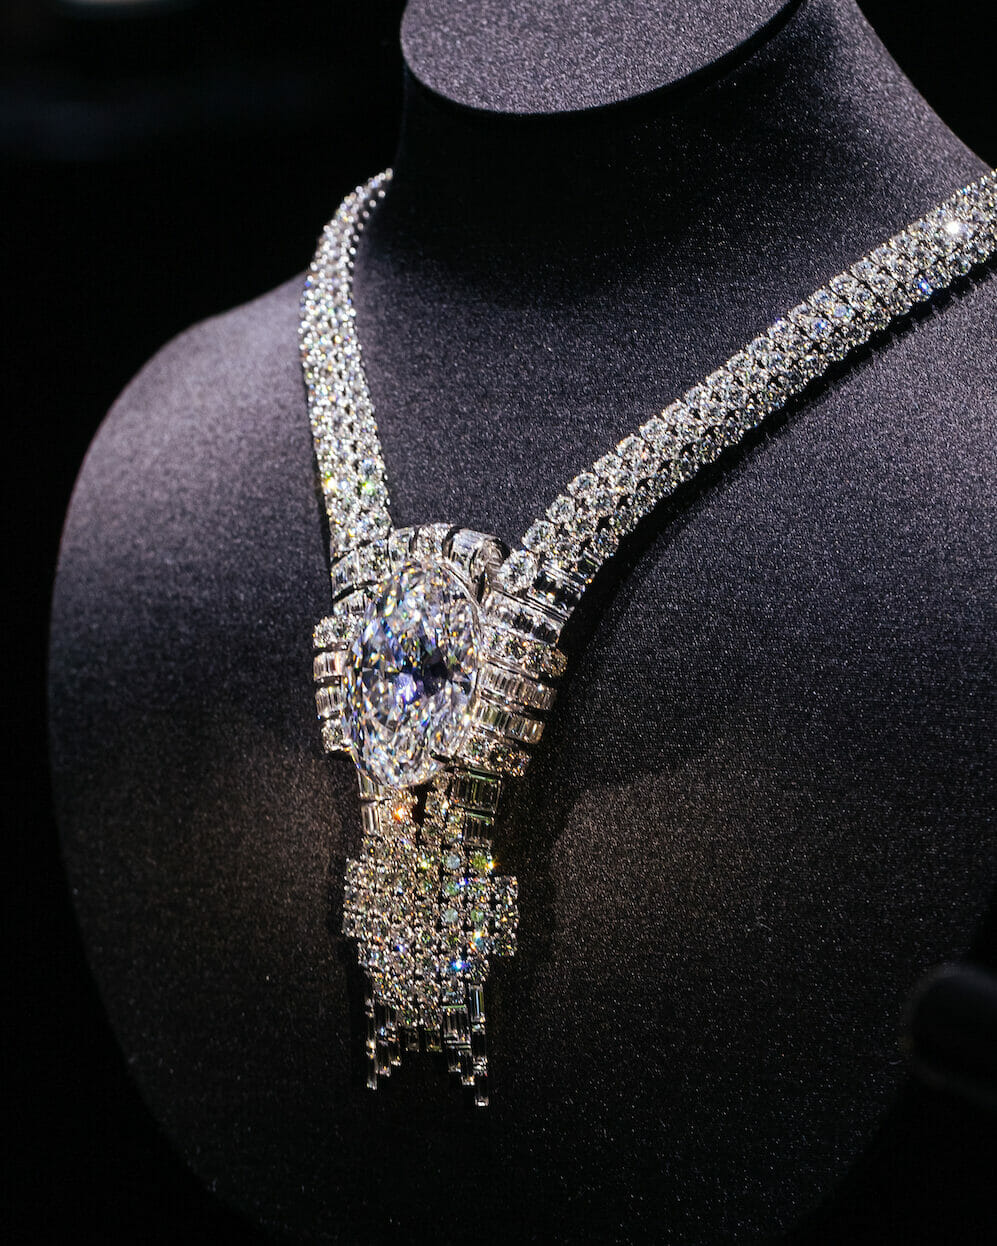 Tiffany & Co.'s Brilliant History, Jewelry